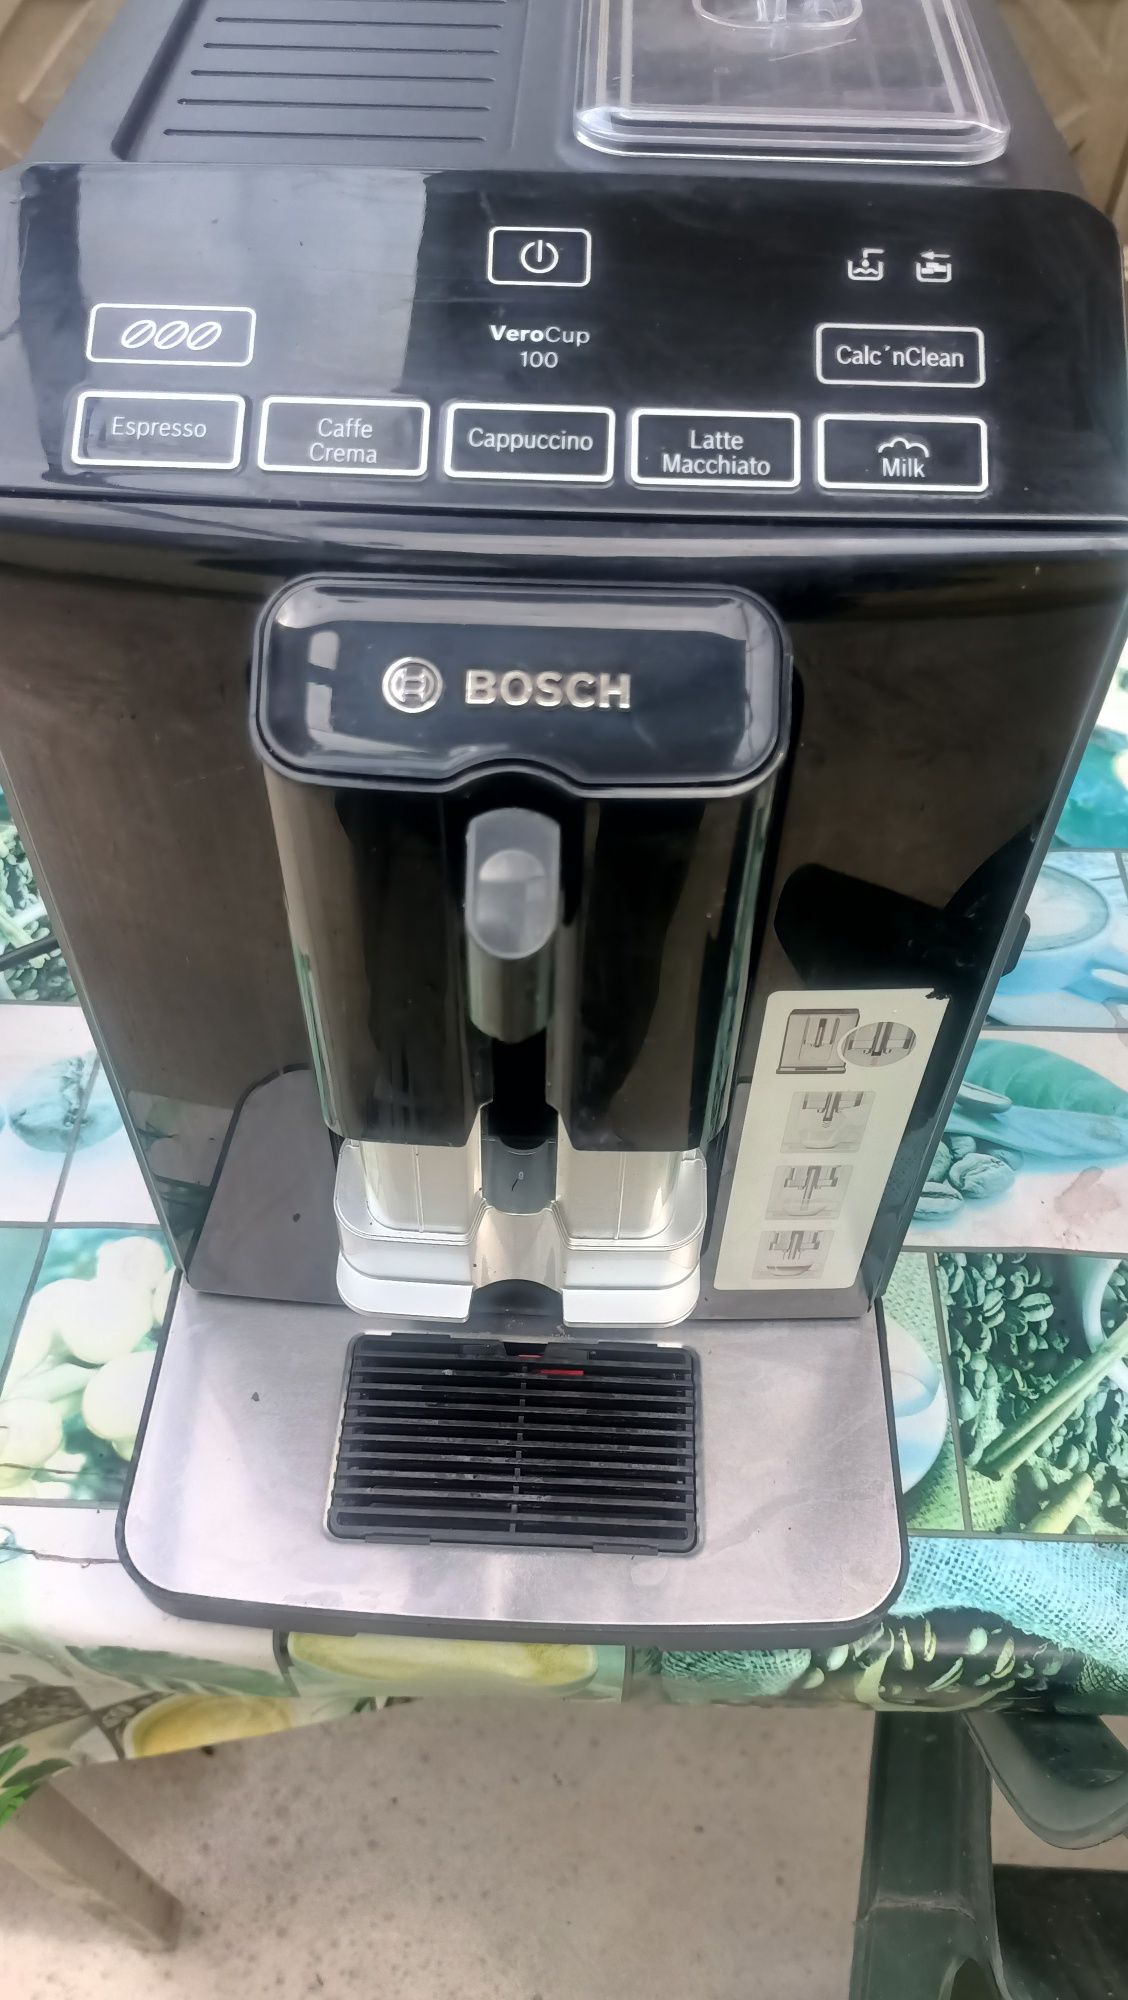 Bosch vero cup 100